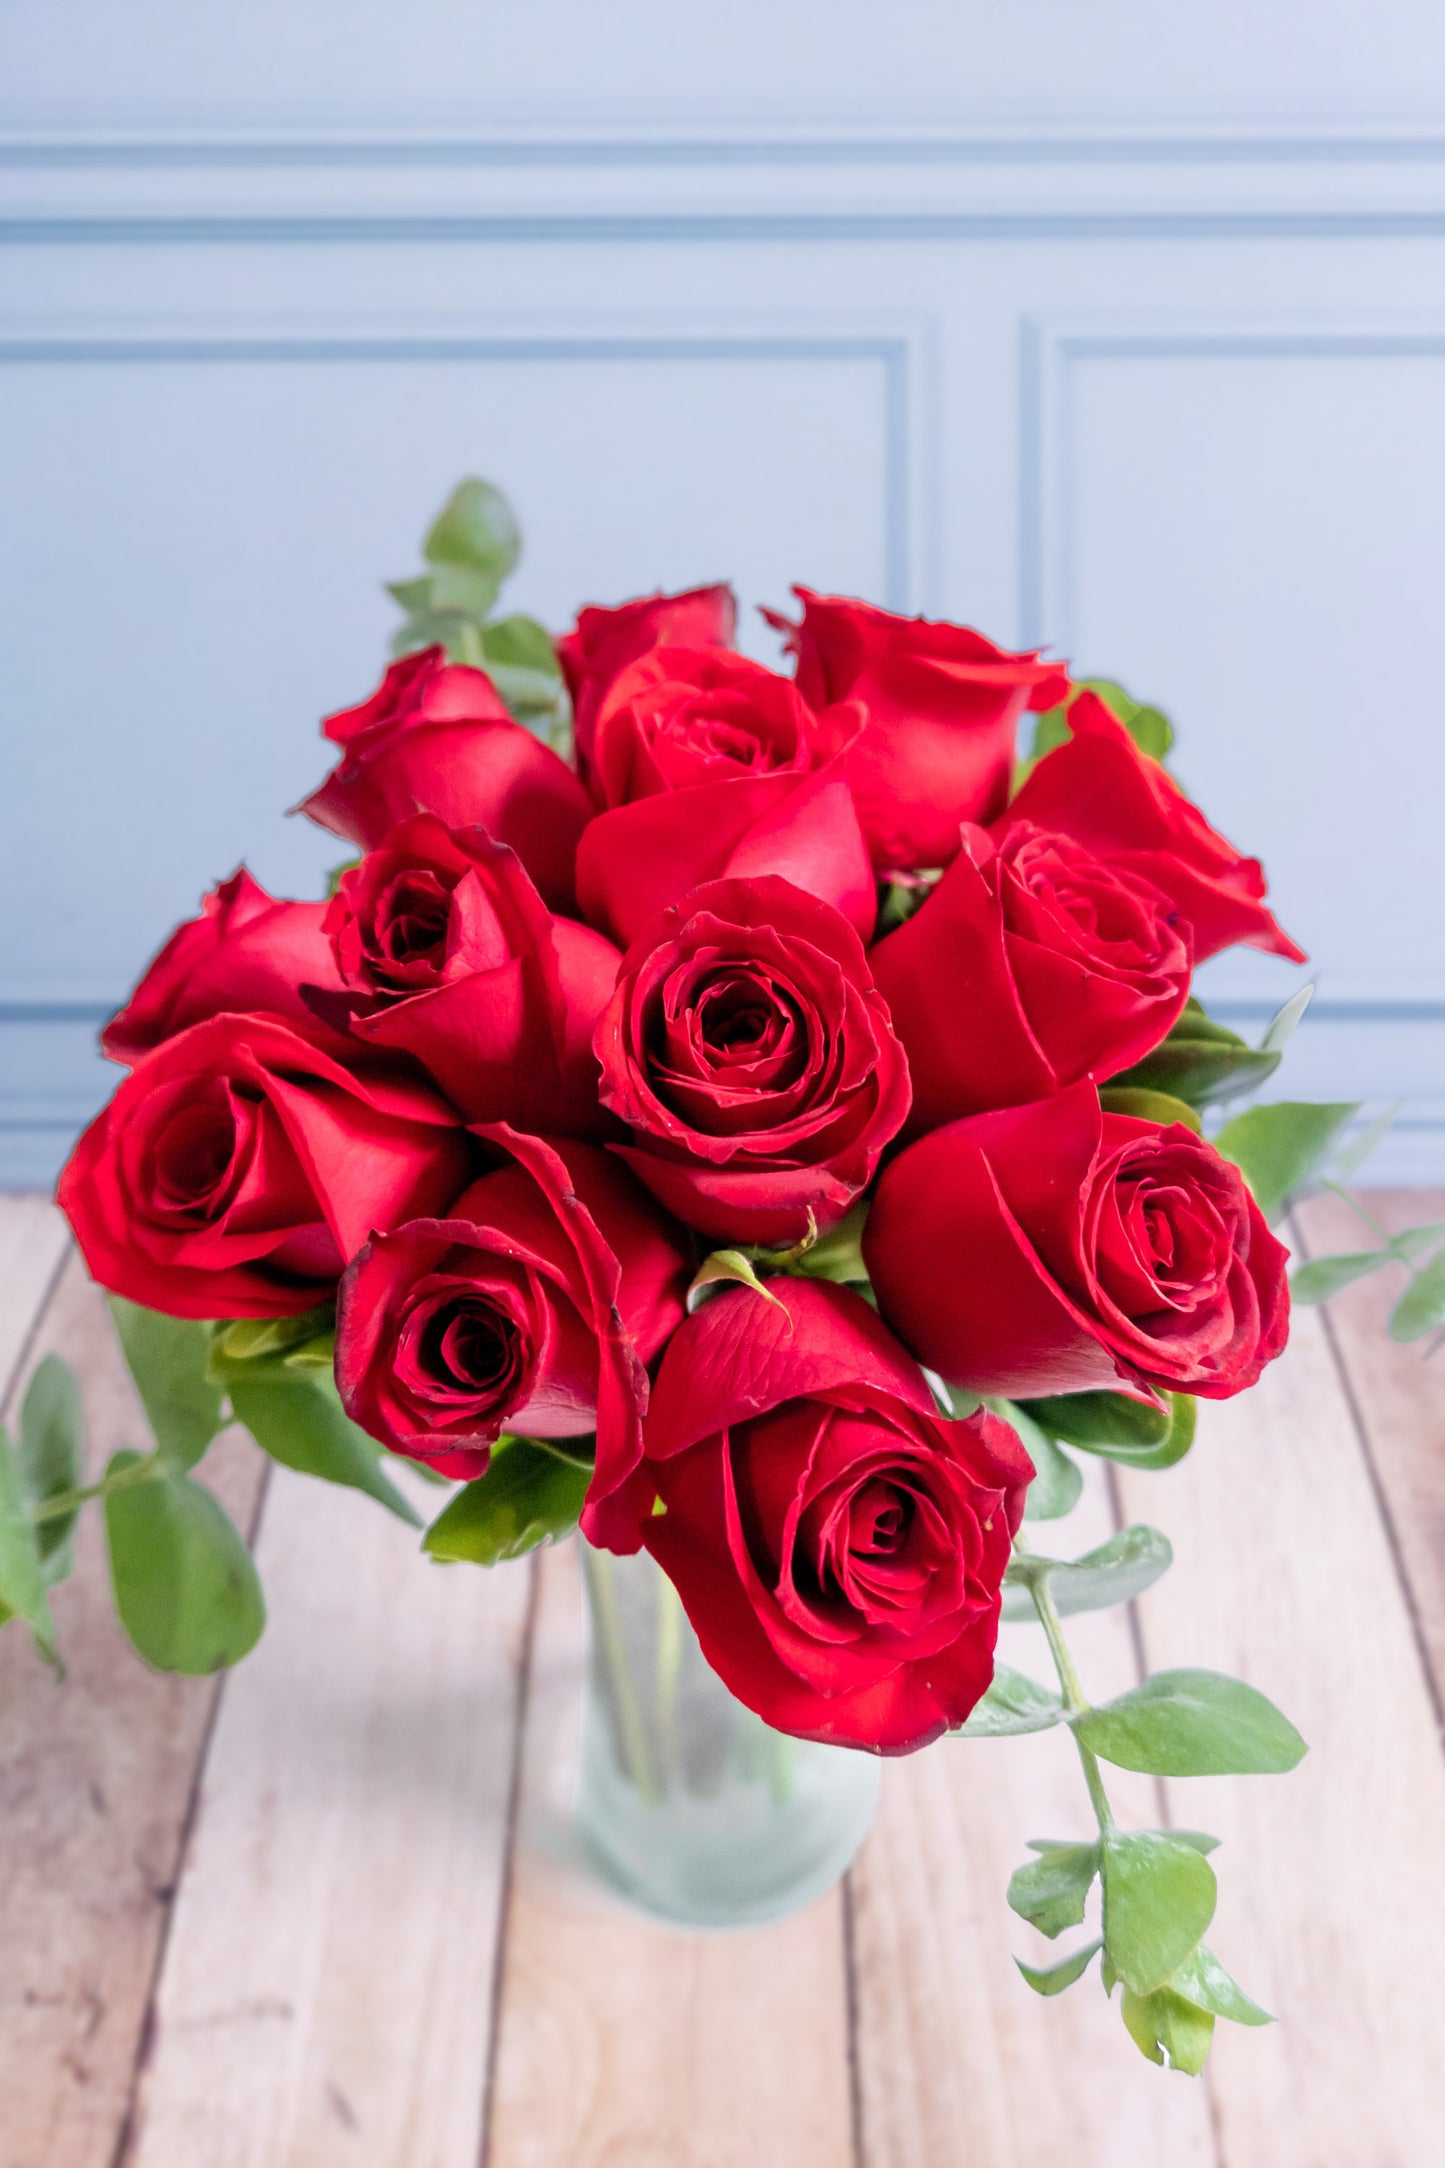 12 Rosas Rojas / Flores